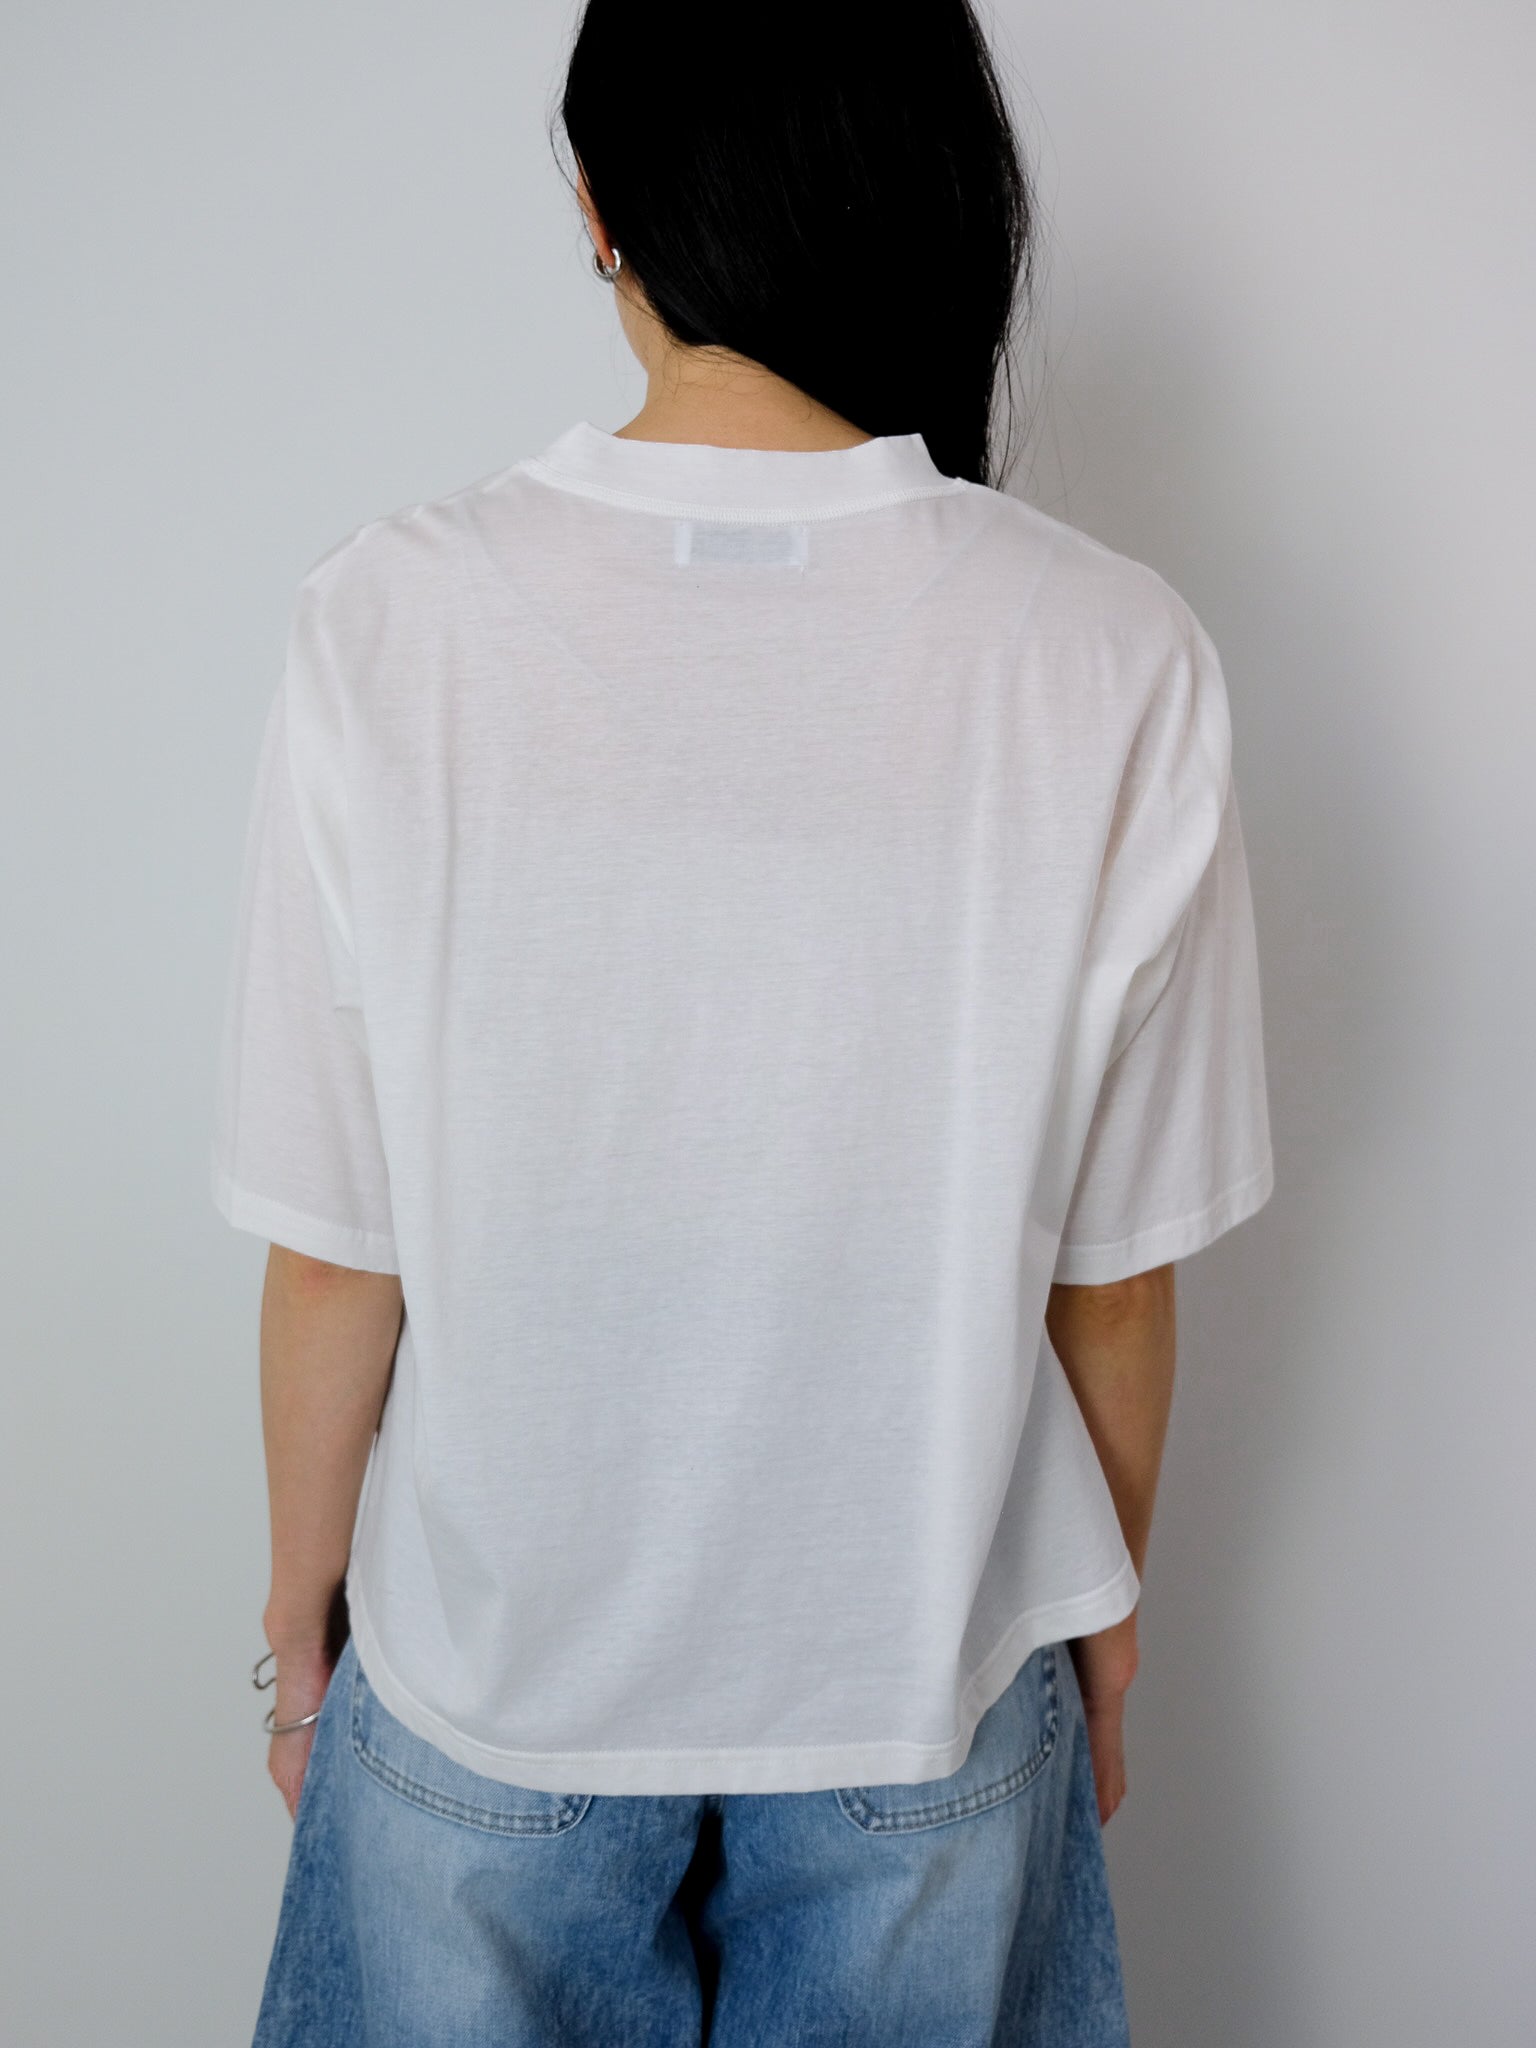 【オリジナル刺繍】VANITY CAT　Tシャツ　[601021]